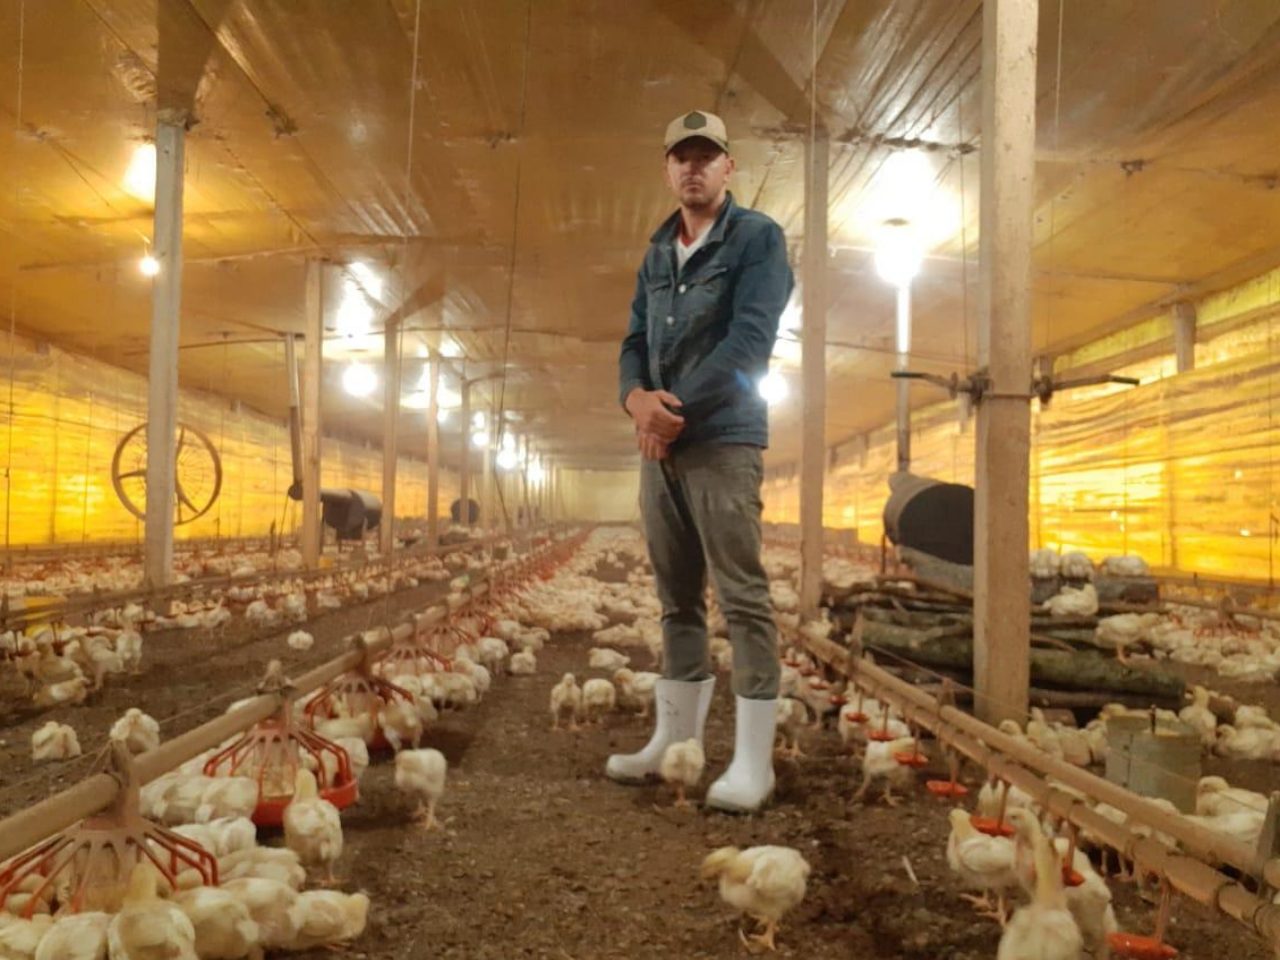 Nenhuma medida das autoridades tem abrangido os Agricultores Familiares que são responsáveis pelo alojamento dos frangos, estão expostos ao vírus e já sentem os prejuízos econômicos gerados pelo coronavírus